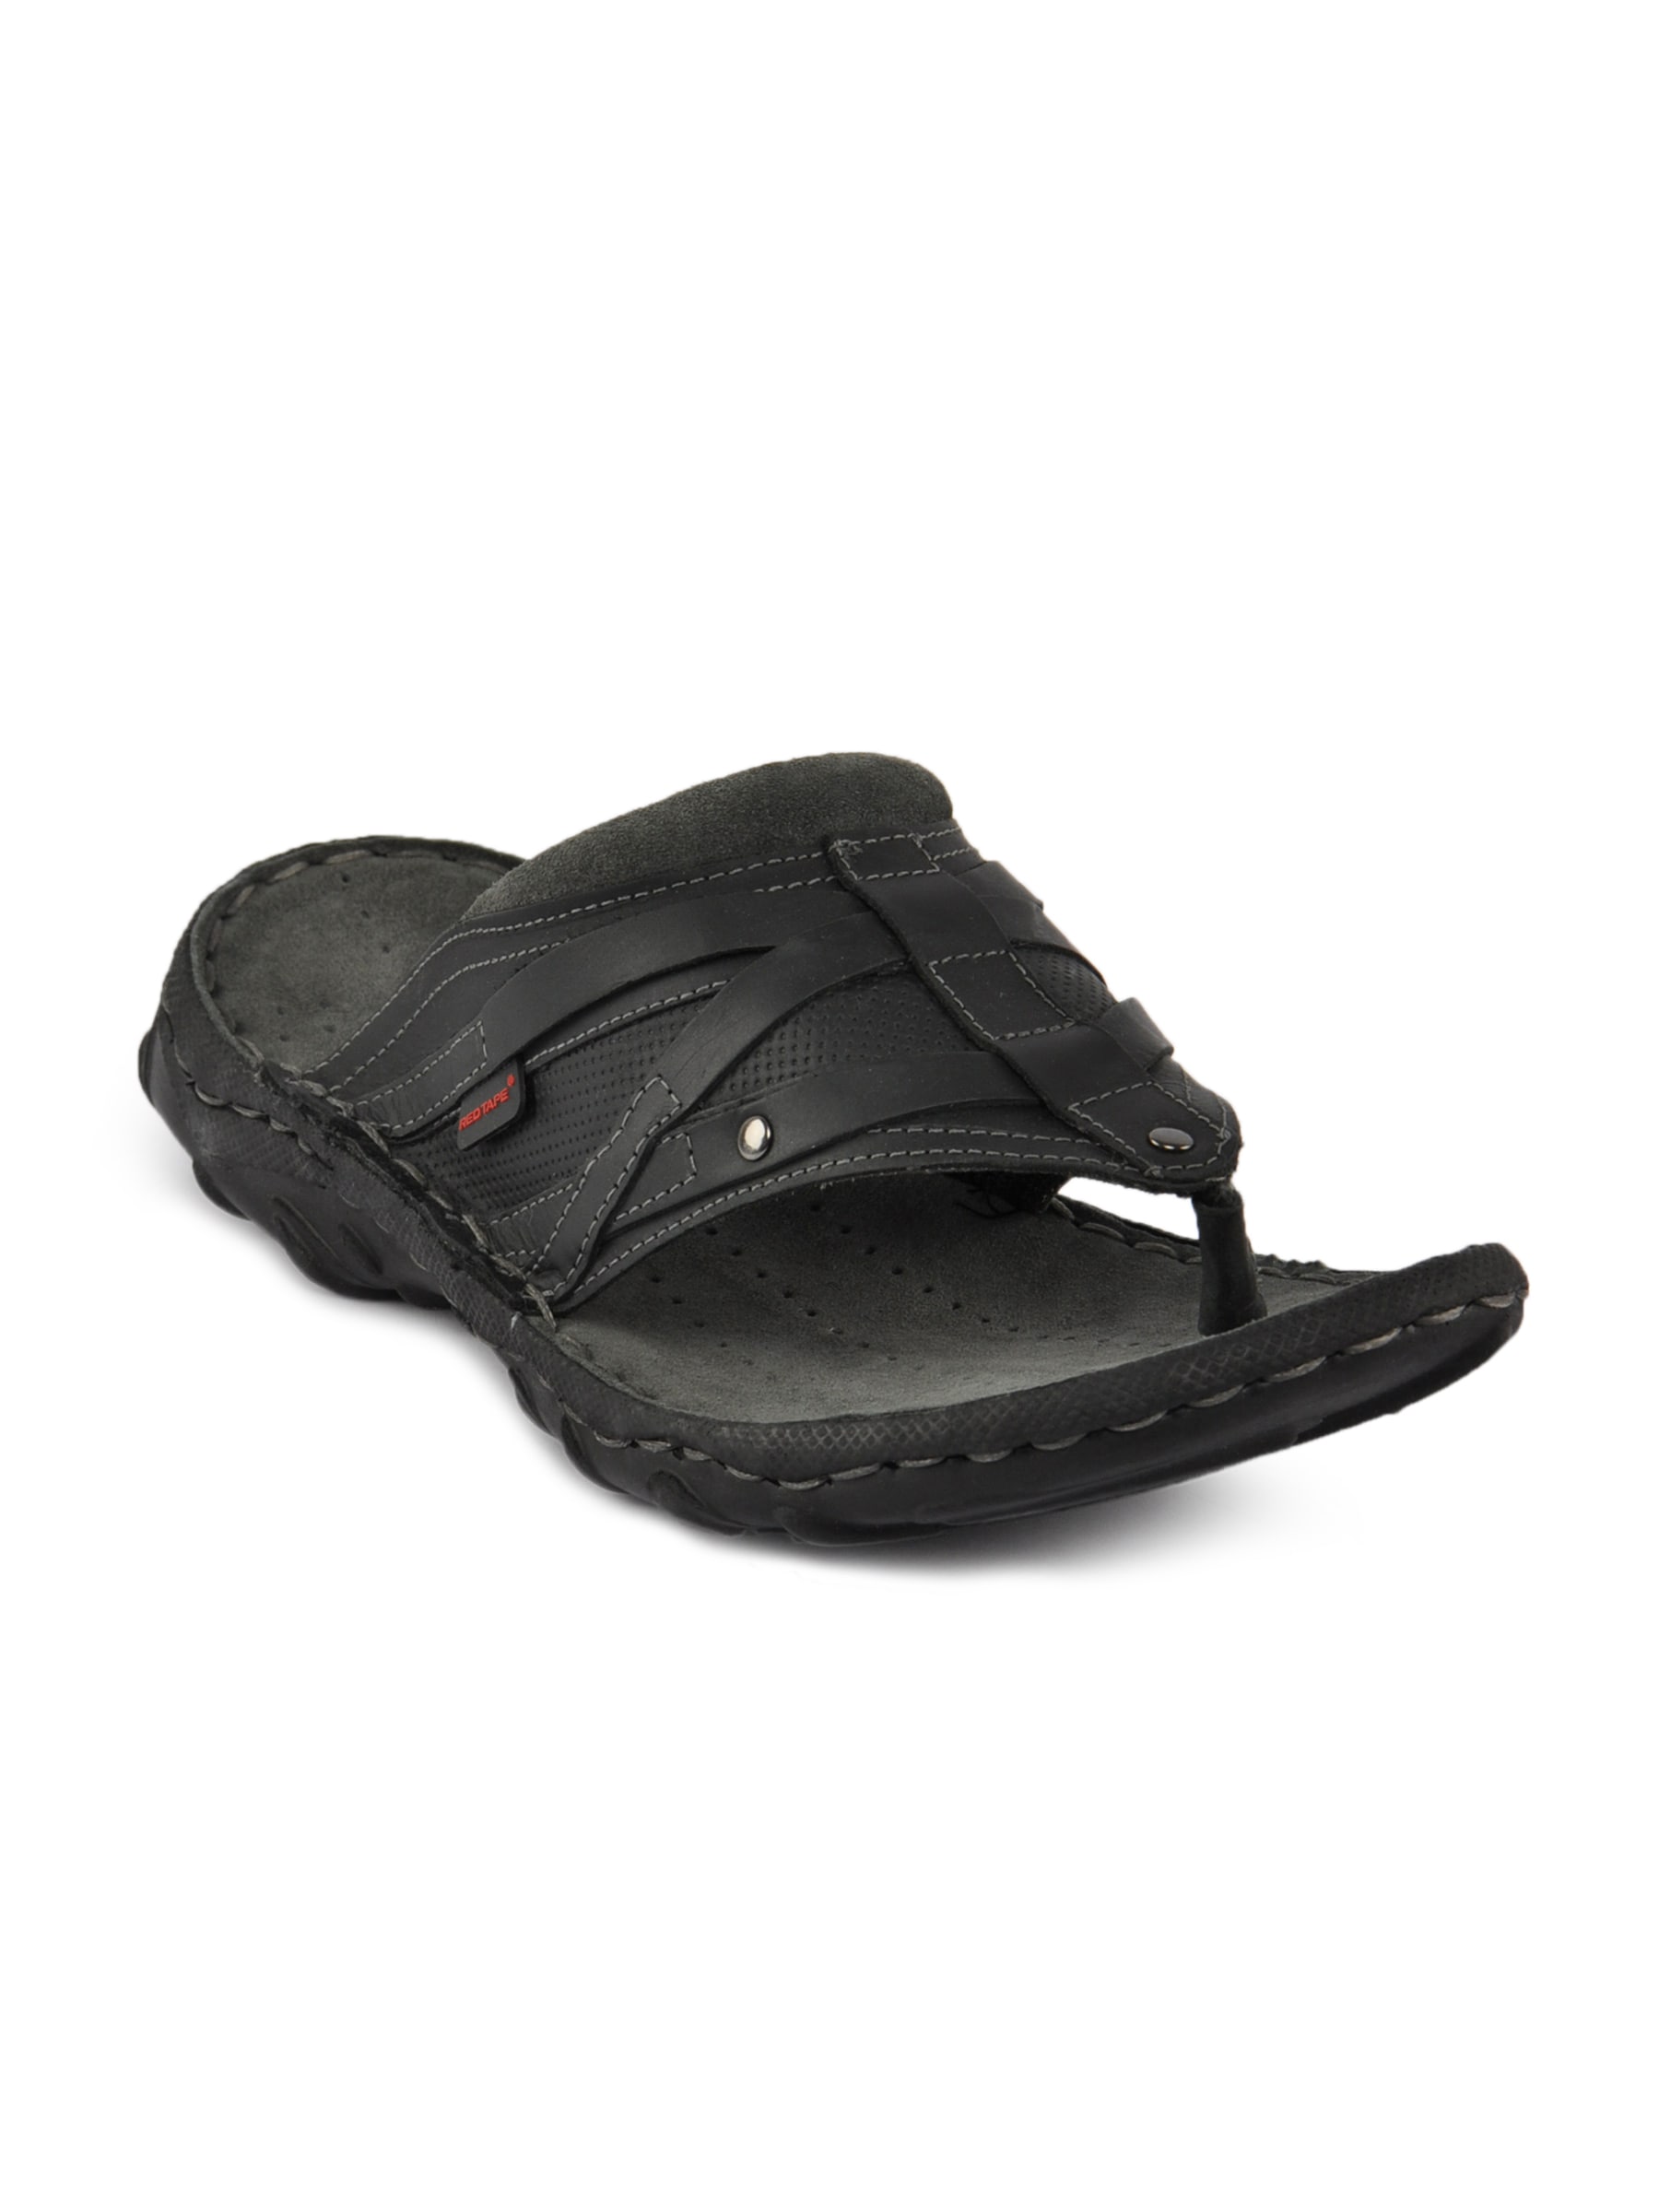 Redtape Men Comfort Black Sandal